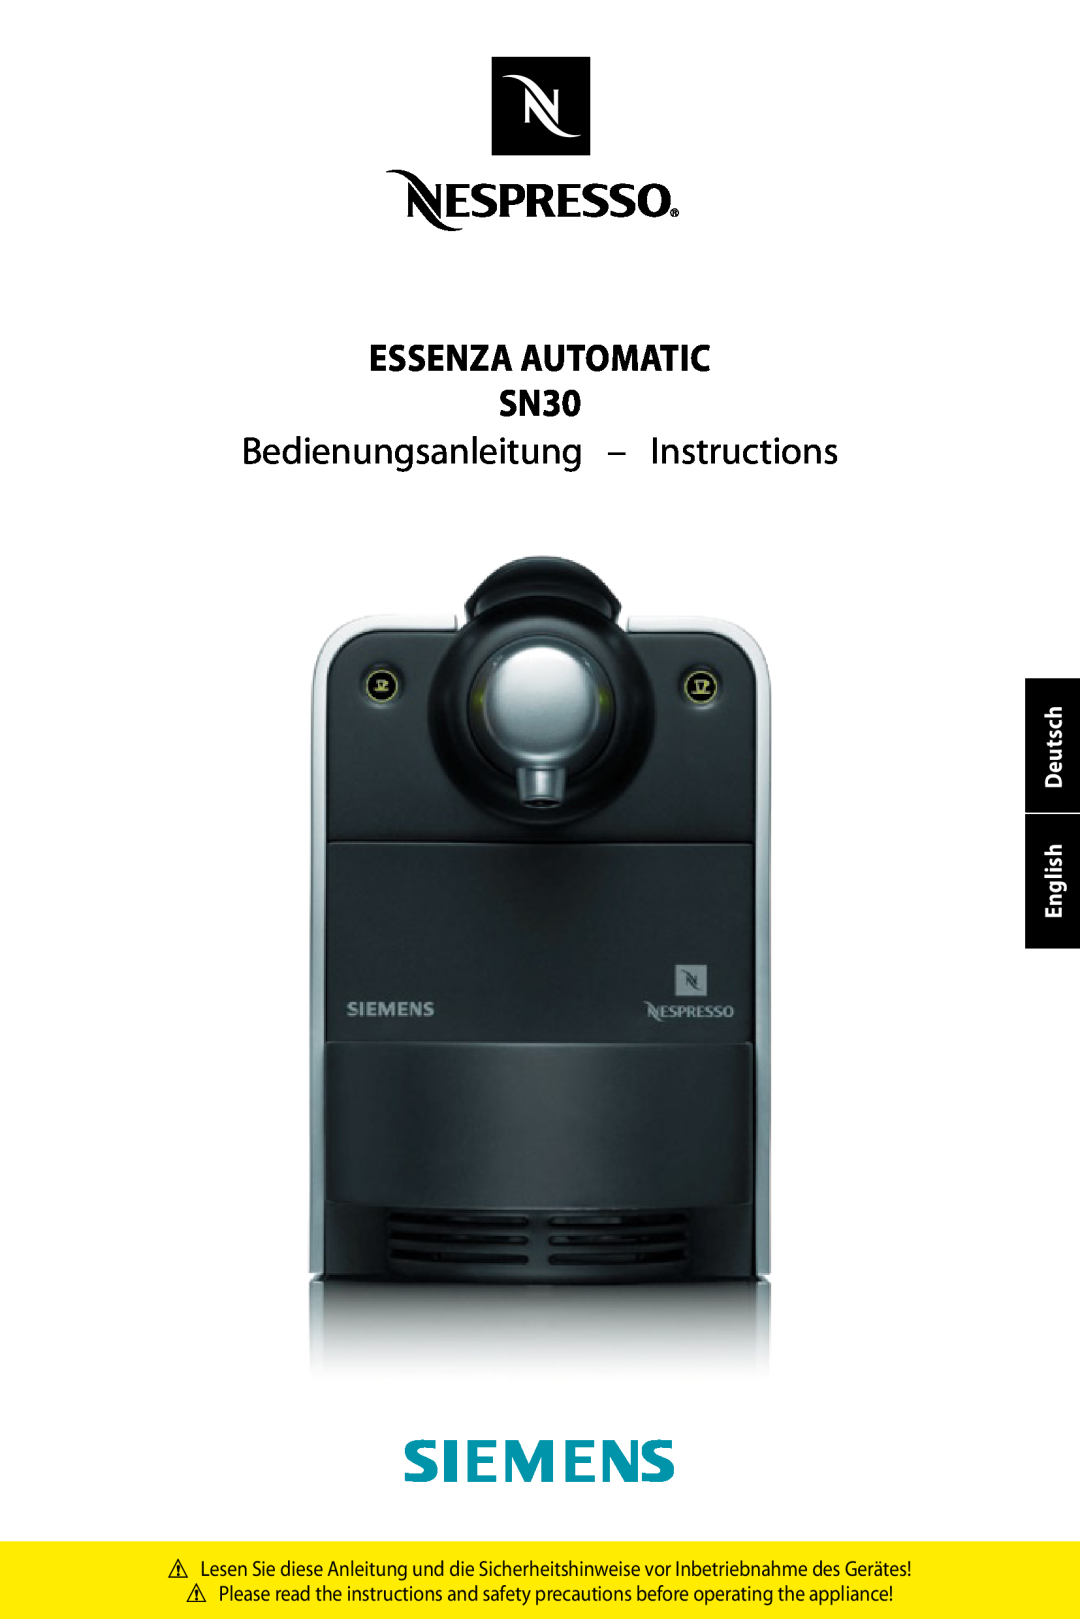 Siemens SN30 manual English Deutsch, essenza automatic sn30, Bedienungsanleitung - Instructions 